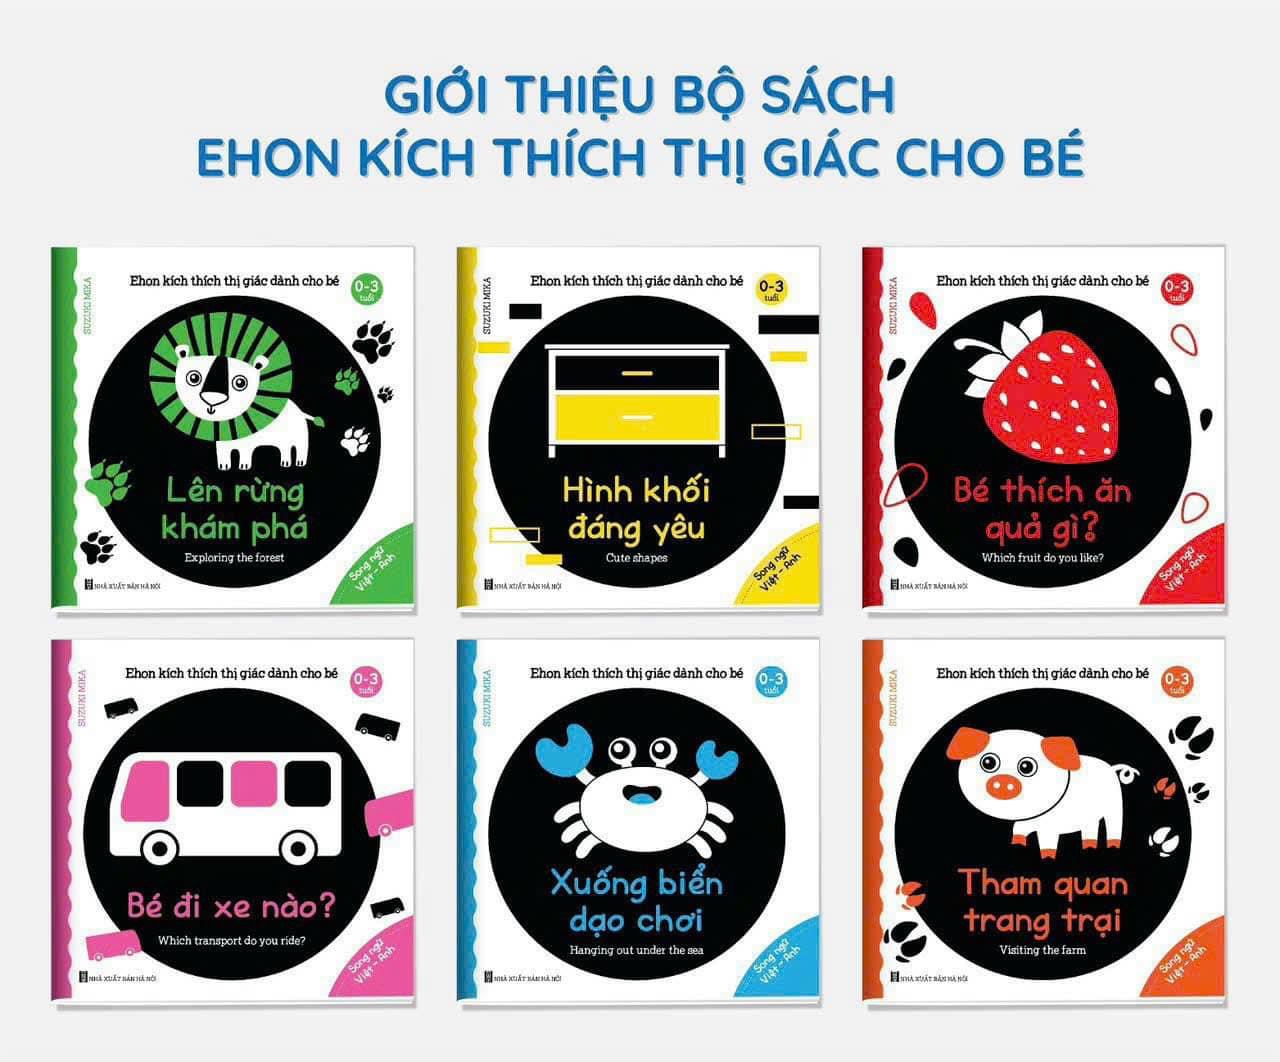 Ehon kích thích thị giác cho bé 0-3 tuổi- Song ngữ Anh Việt bộ 6 cuốn